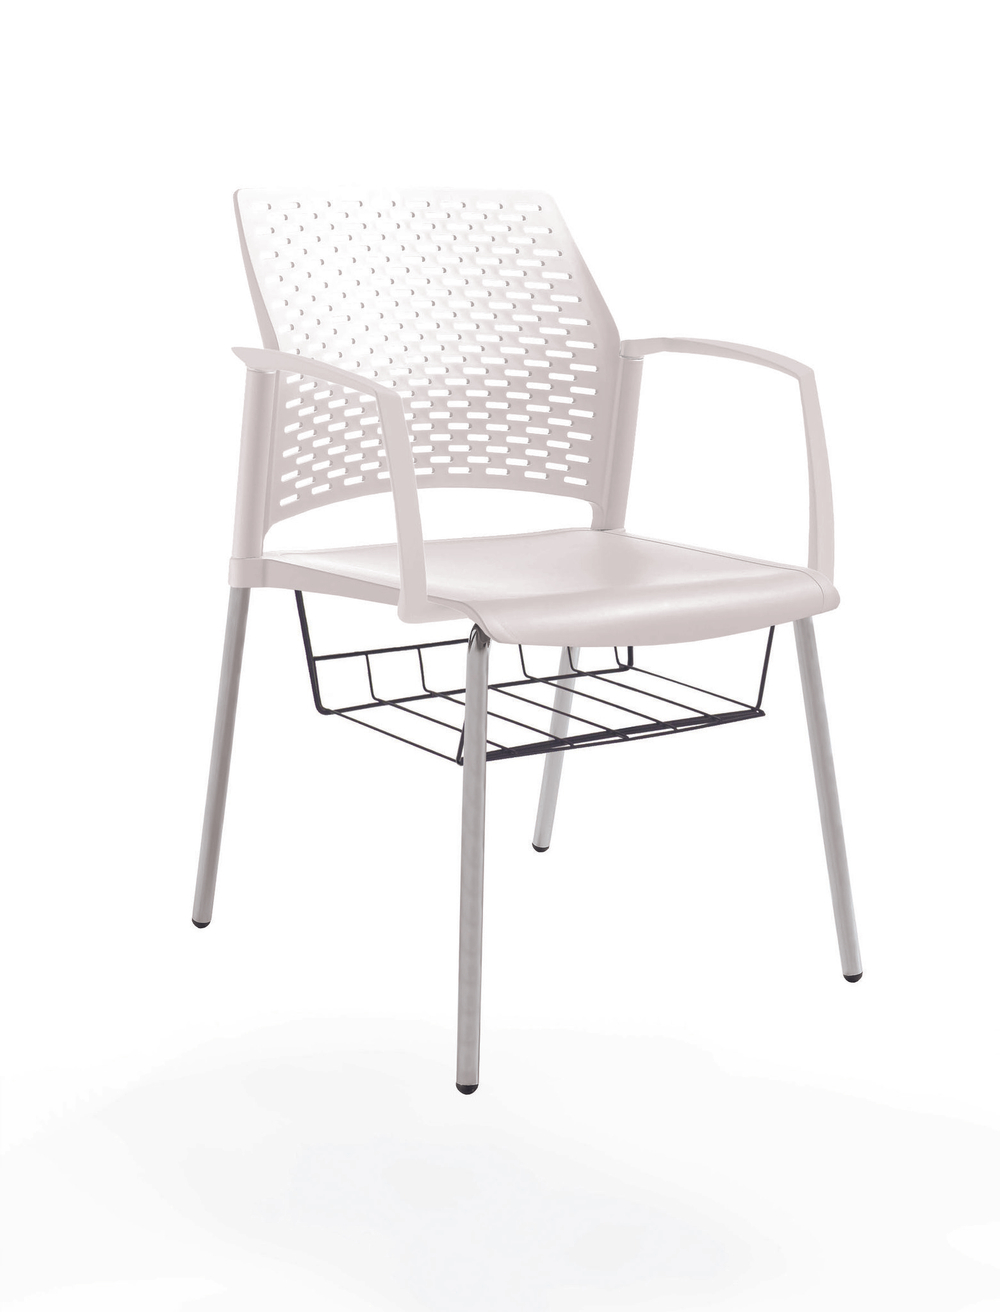 стул Rewind, каркас серый, пластик белый, с закрытыми подлокотниками, с подседельной корзиной